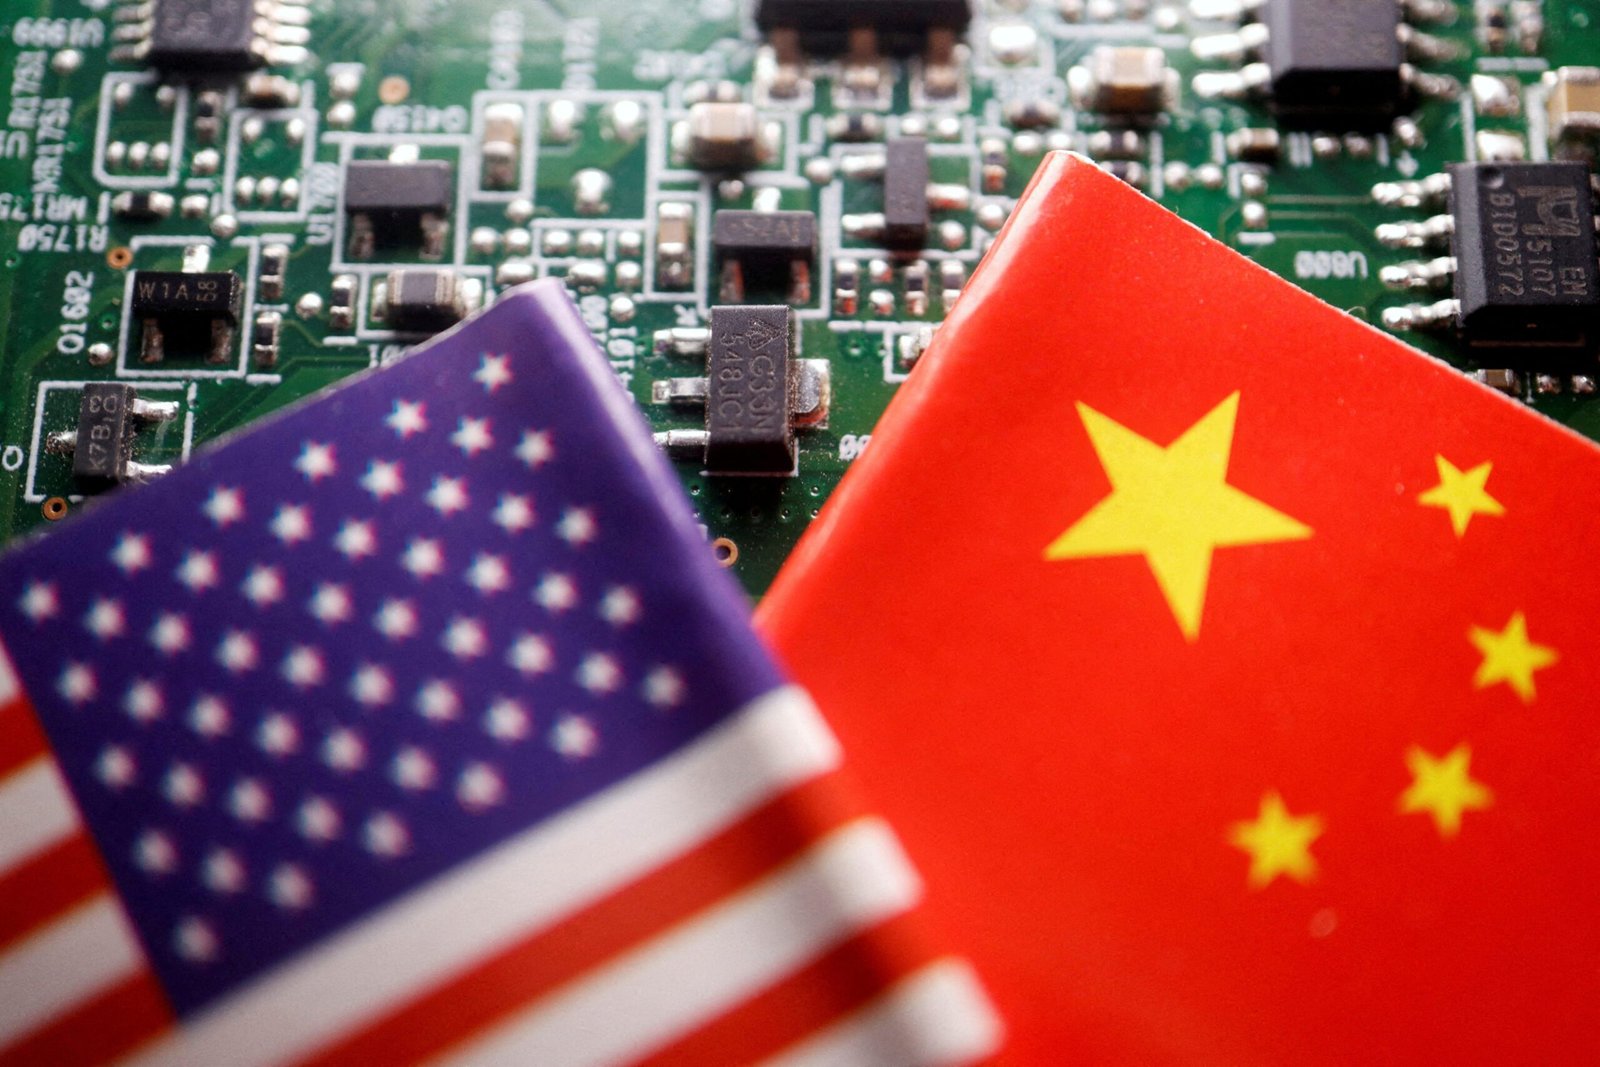 Los ojos de Estados Unidos restringen el acceso de China al software de inteligencia artificial utilizado en aplicaciones como ChatGPT